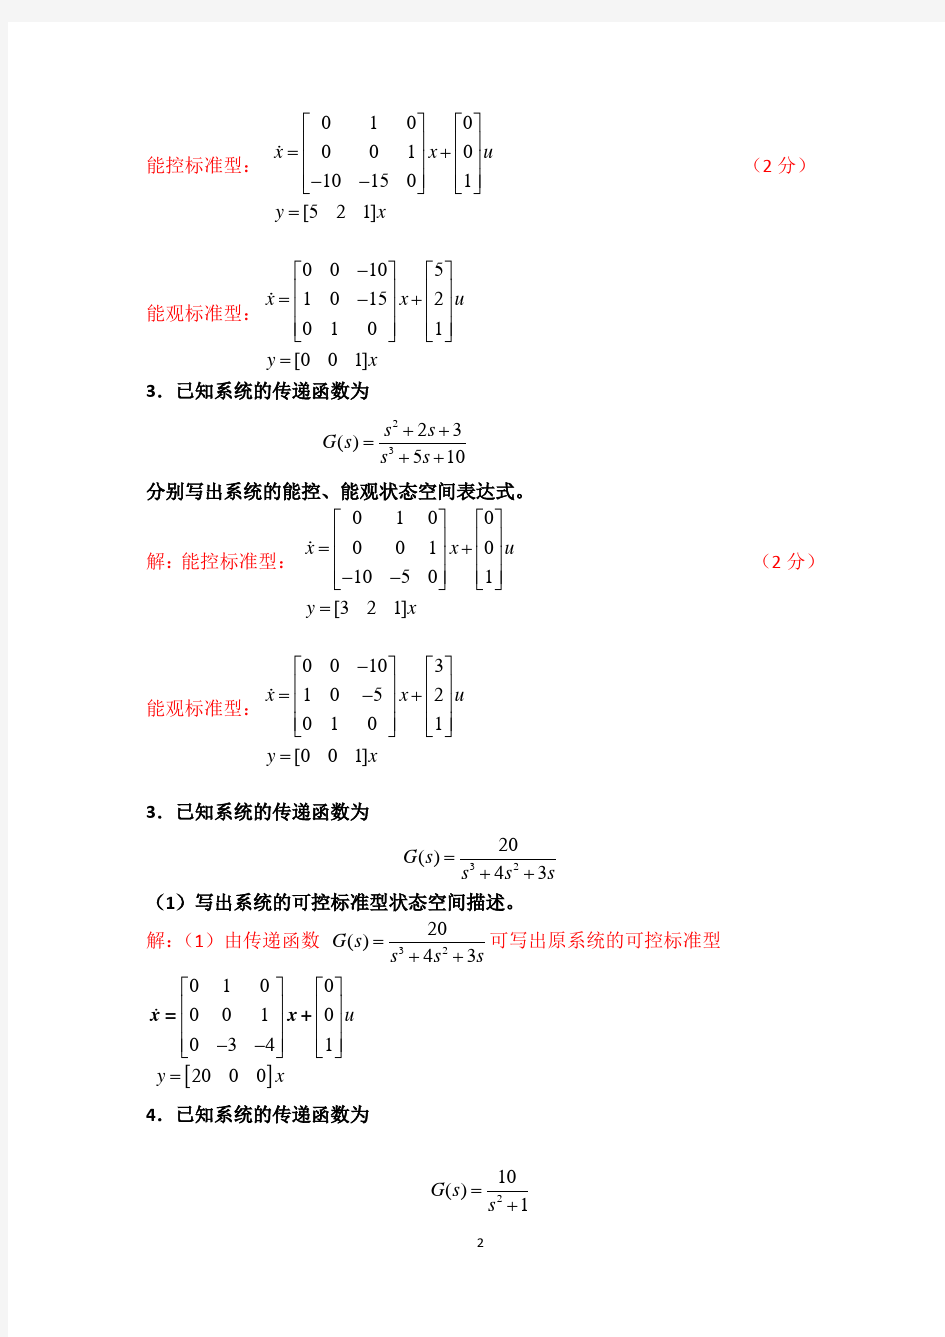 数学物理方法第二章习题及答案整理